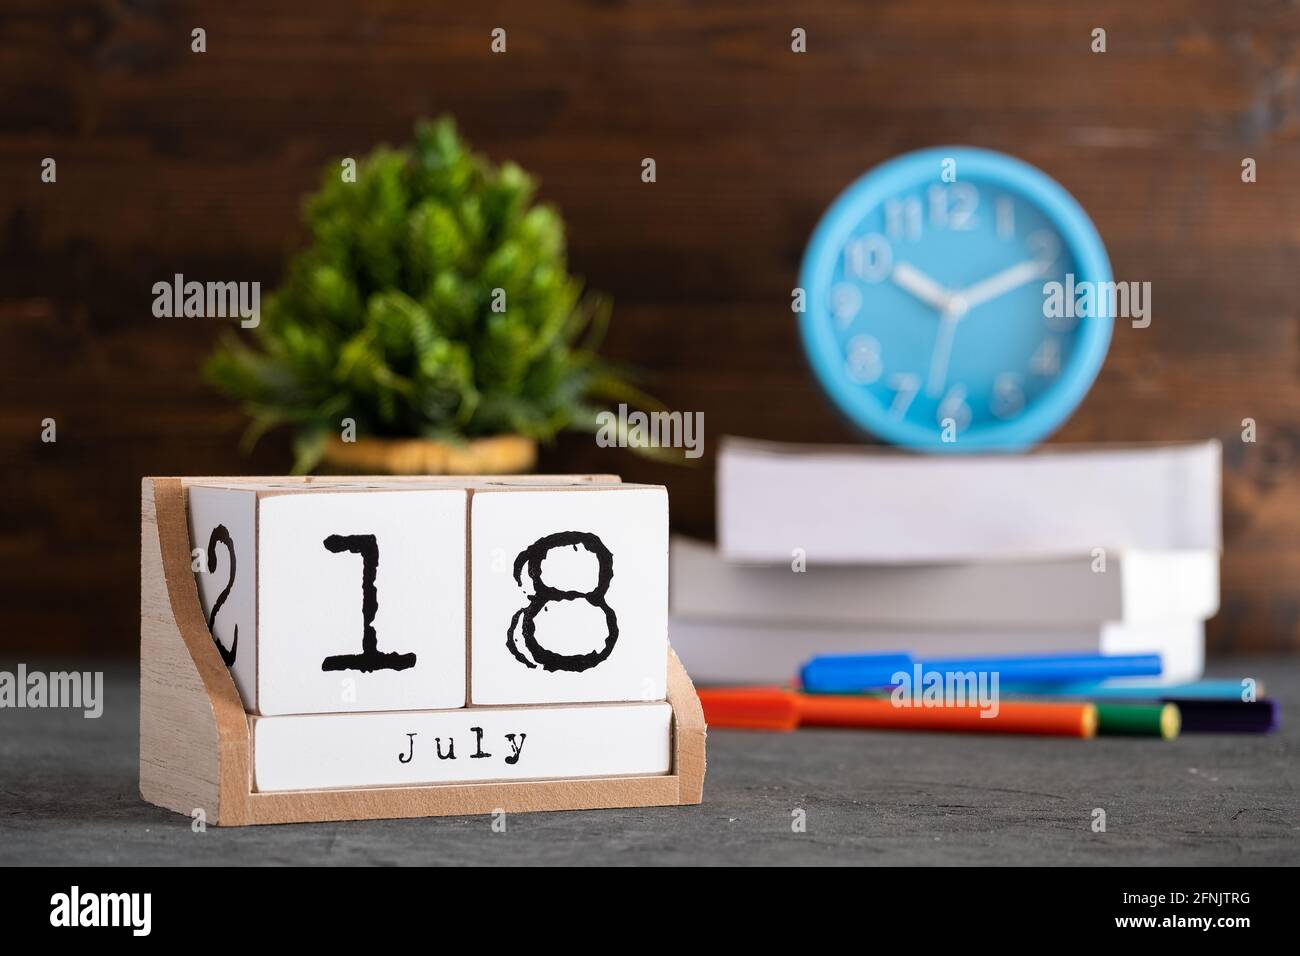 18 juillet. Juillet 18 calendrier cube en bois avec des objets flous sur fond. Banque D'Images